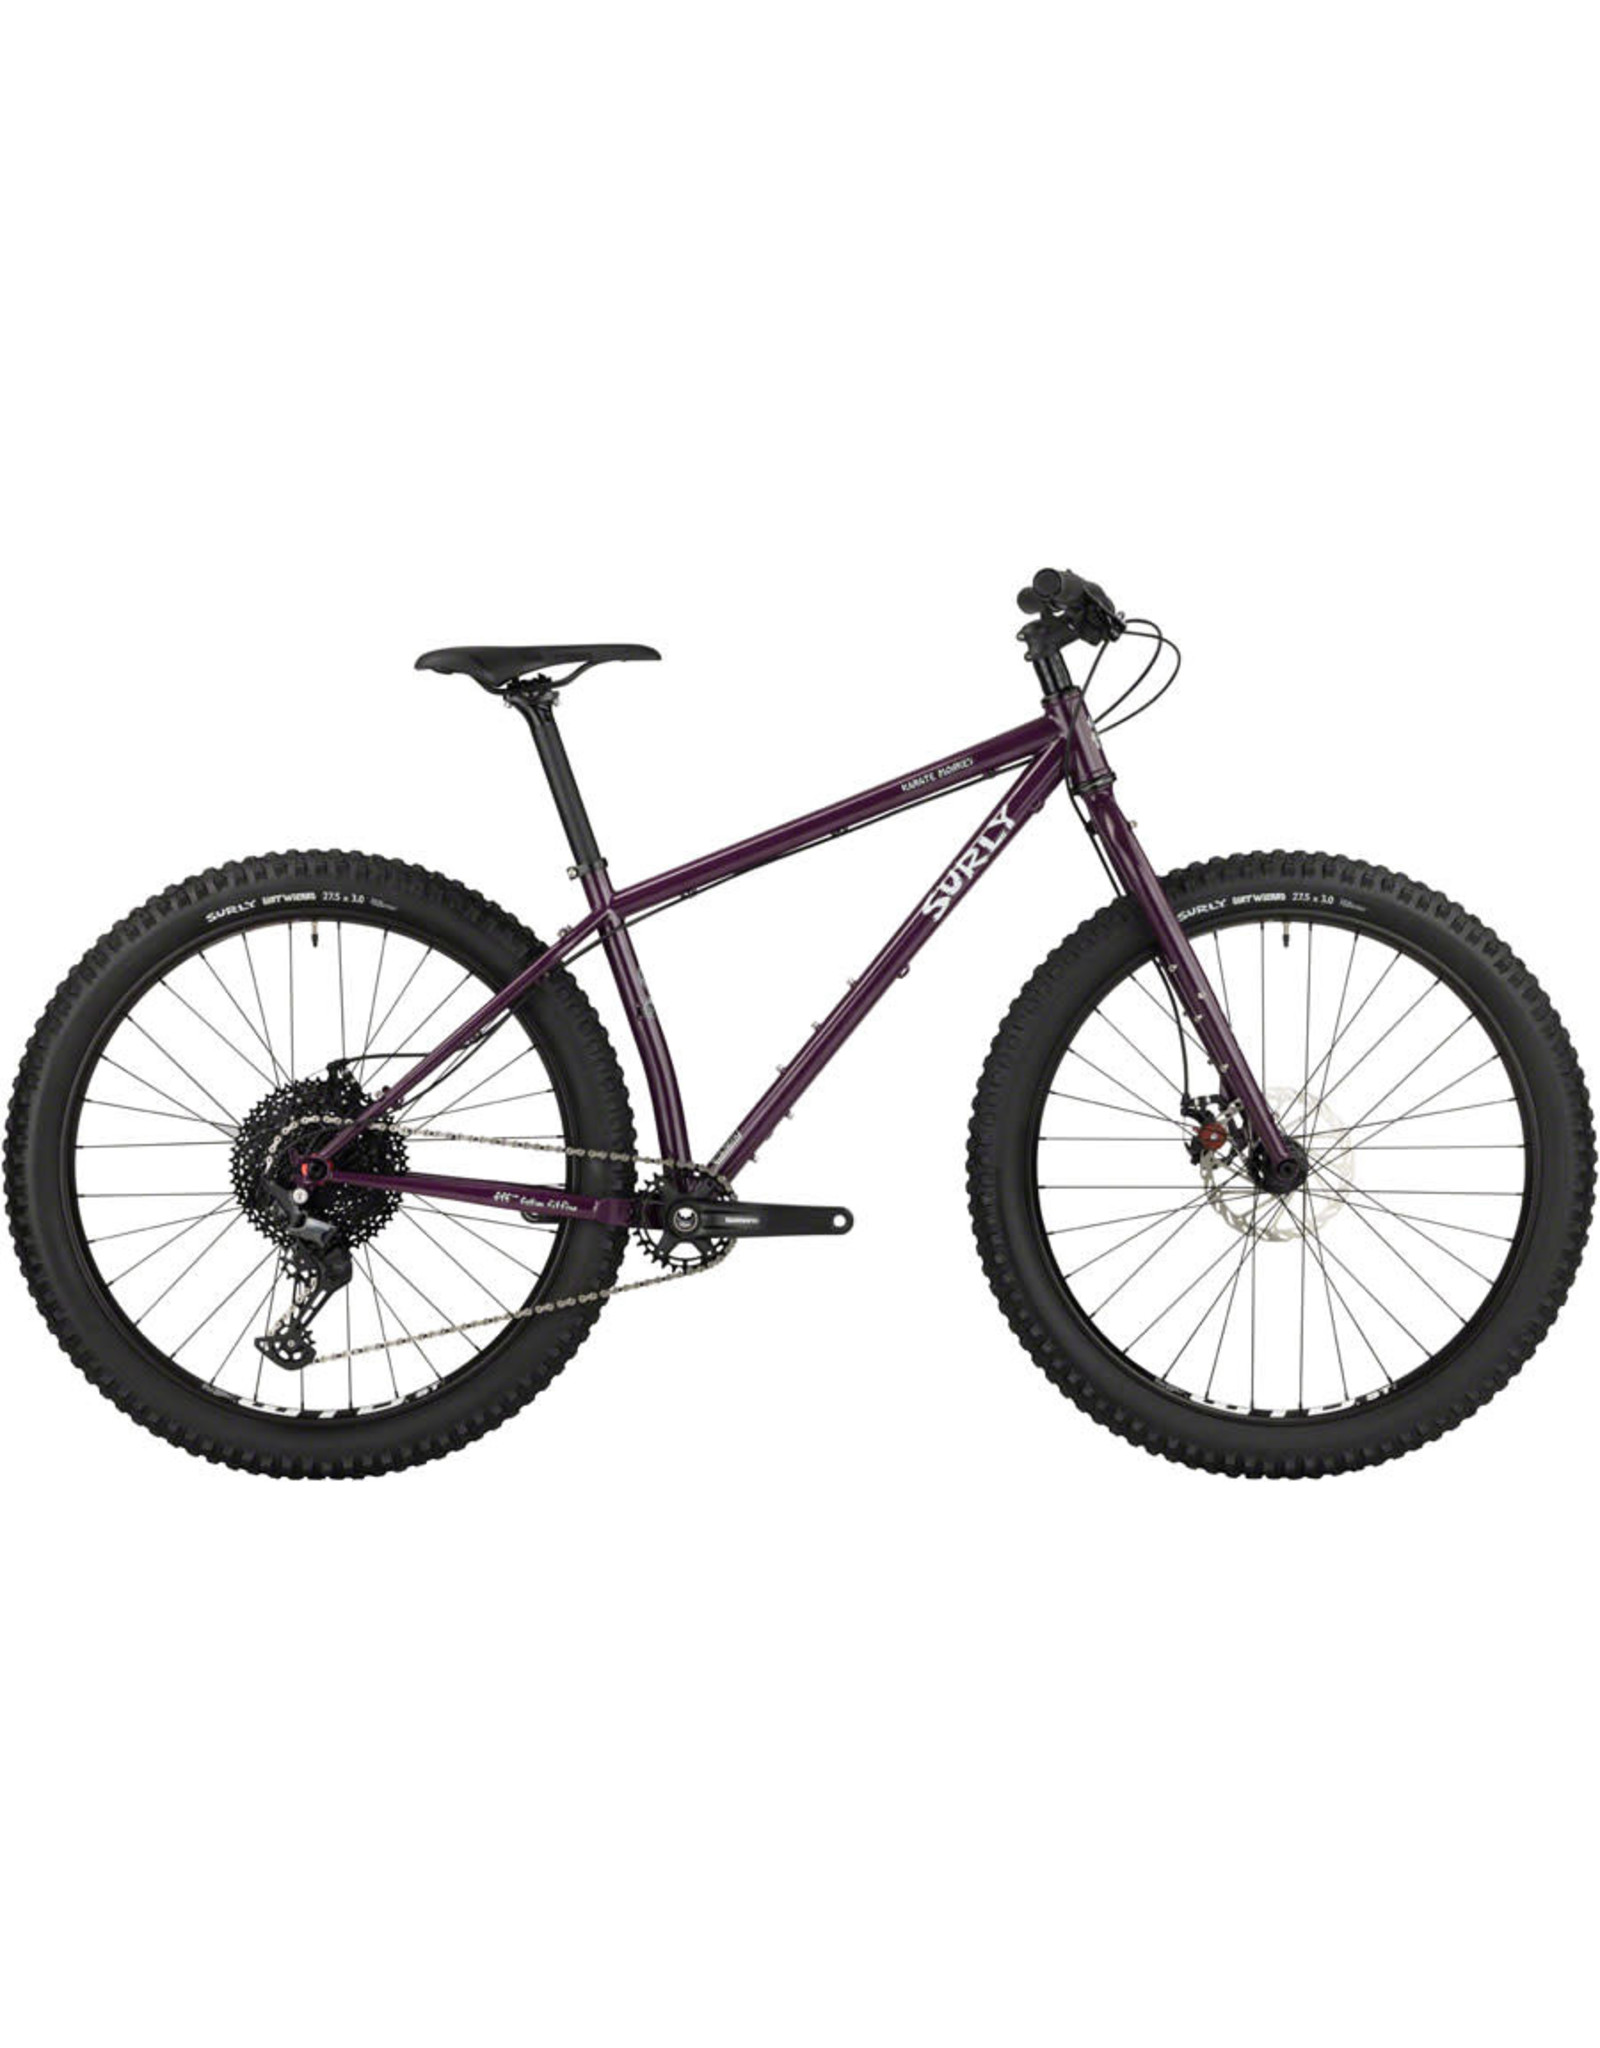 Surly Surly Karate Monkey Bike Purple Large